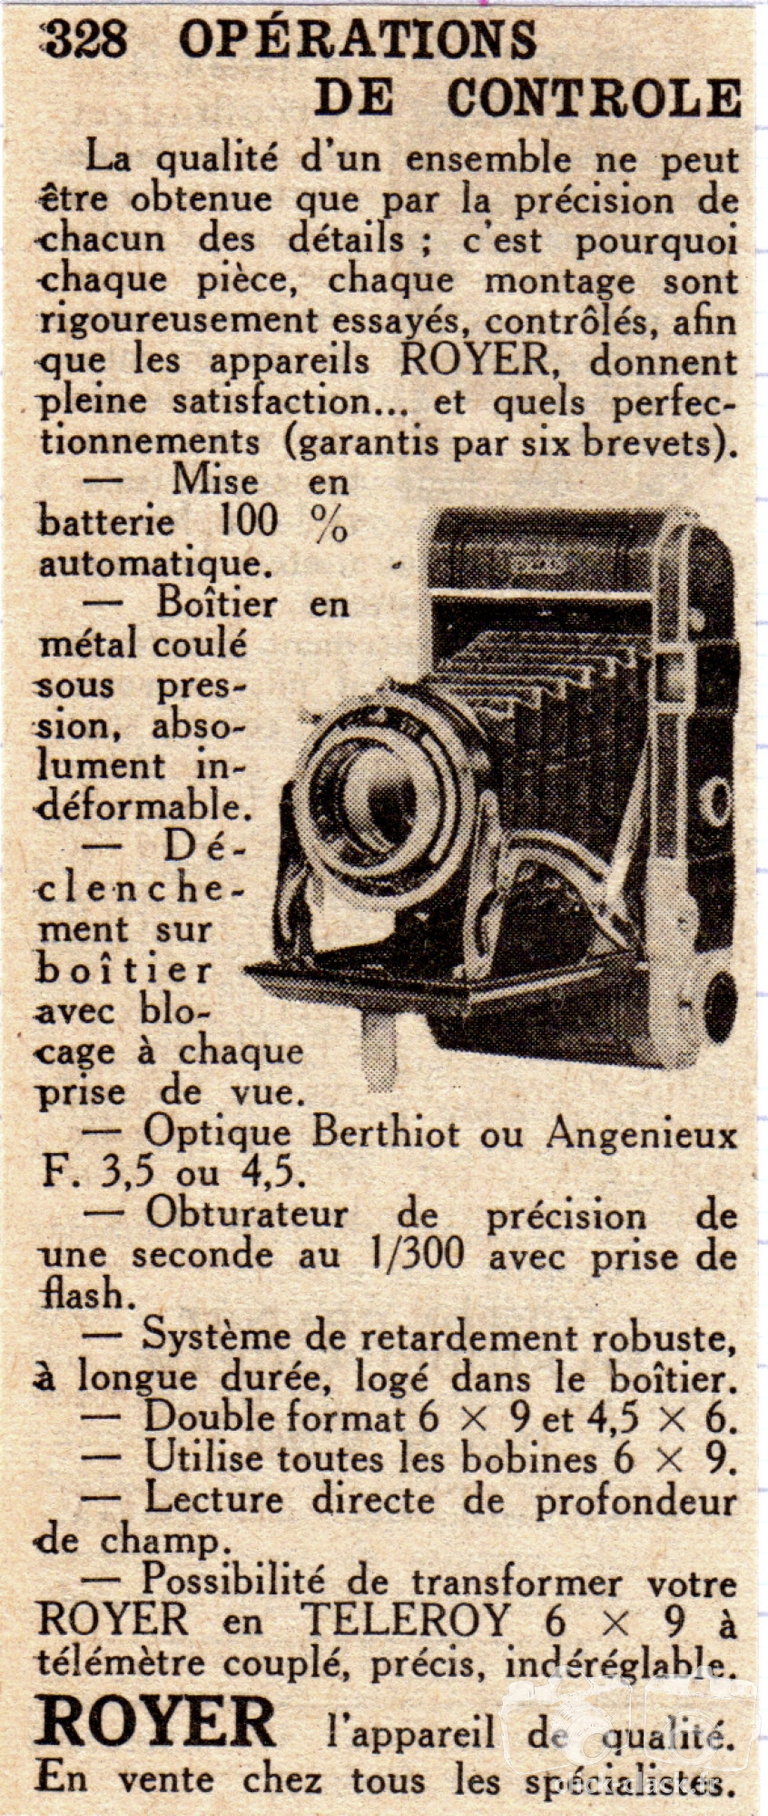 SITO de Royer - Royer, Téléroy - juillet 1950 - Sciences & Vie